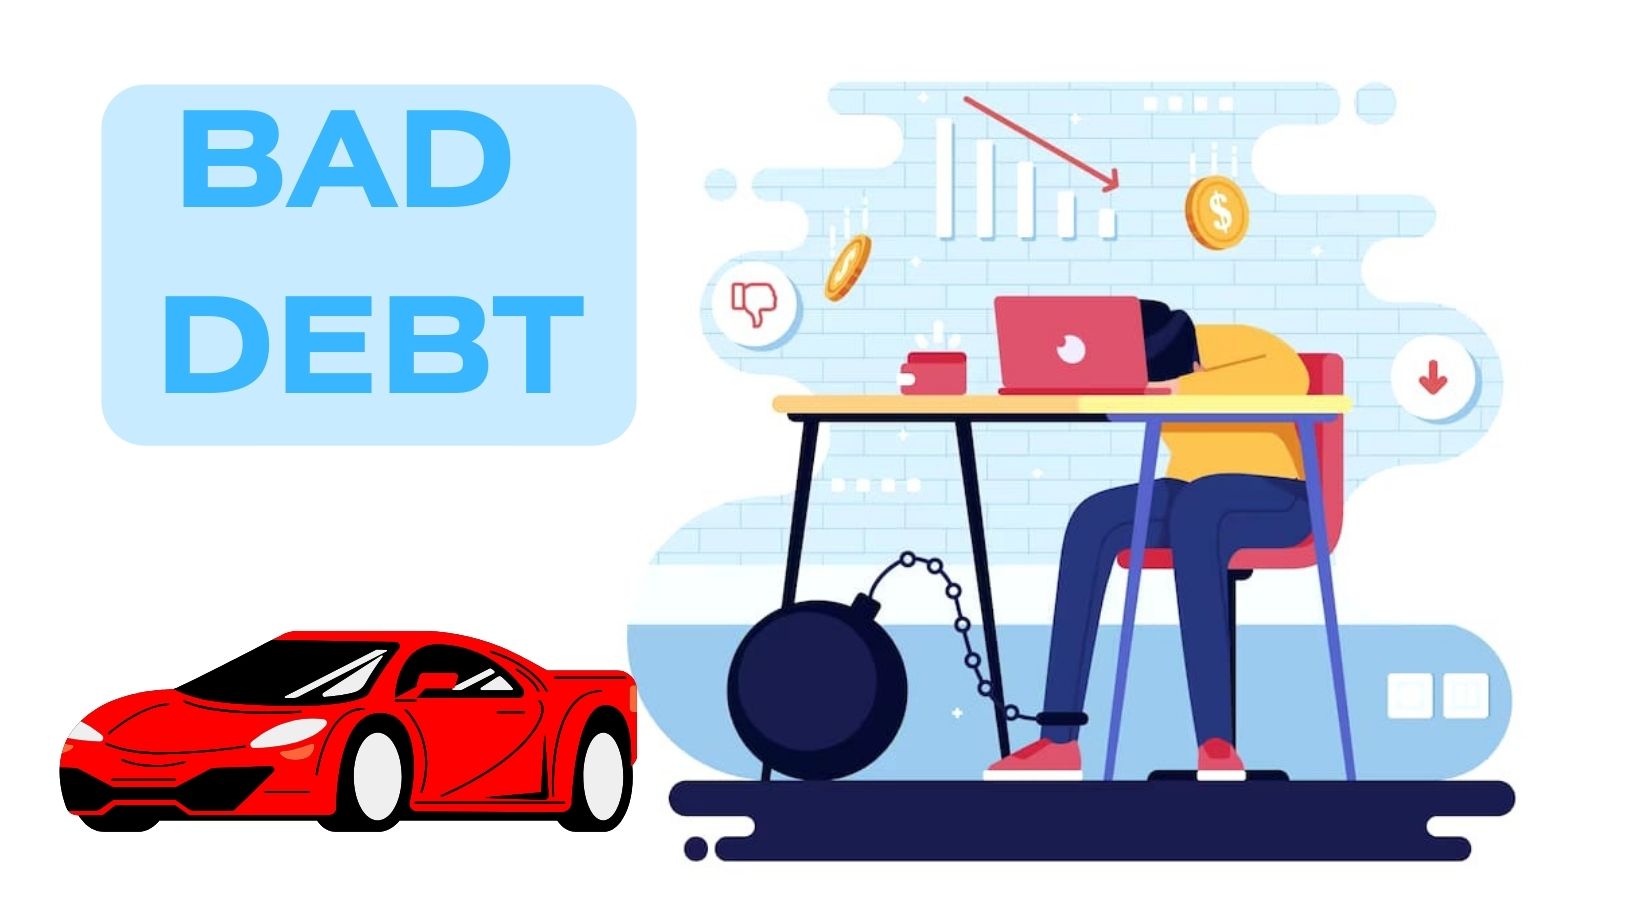 चांगले कर्ज आणि वाईट कर्ज | Good Debt and Bad Debt